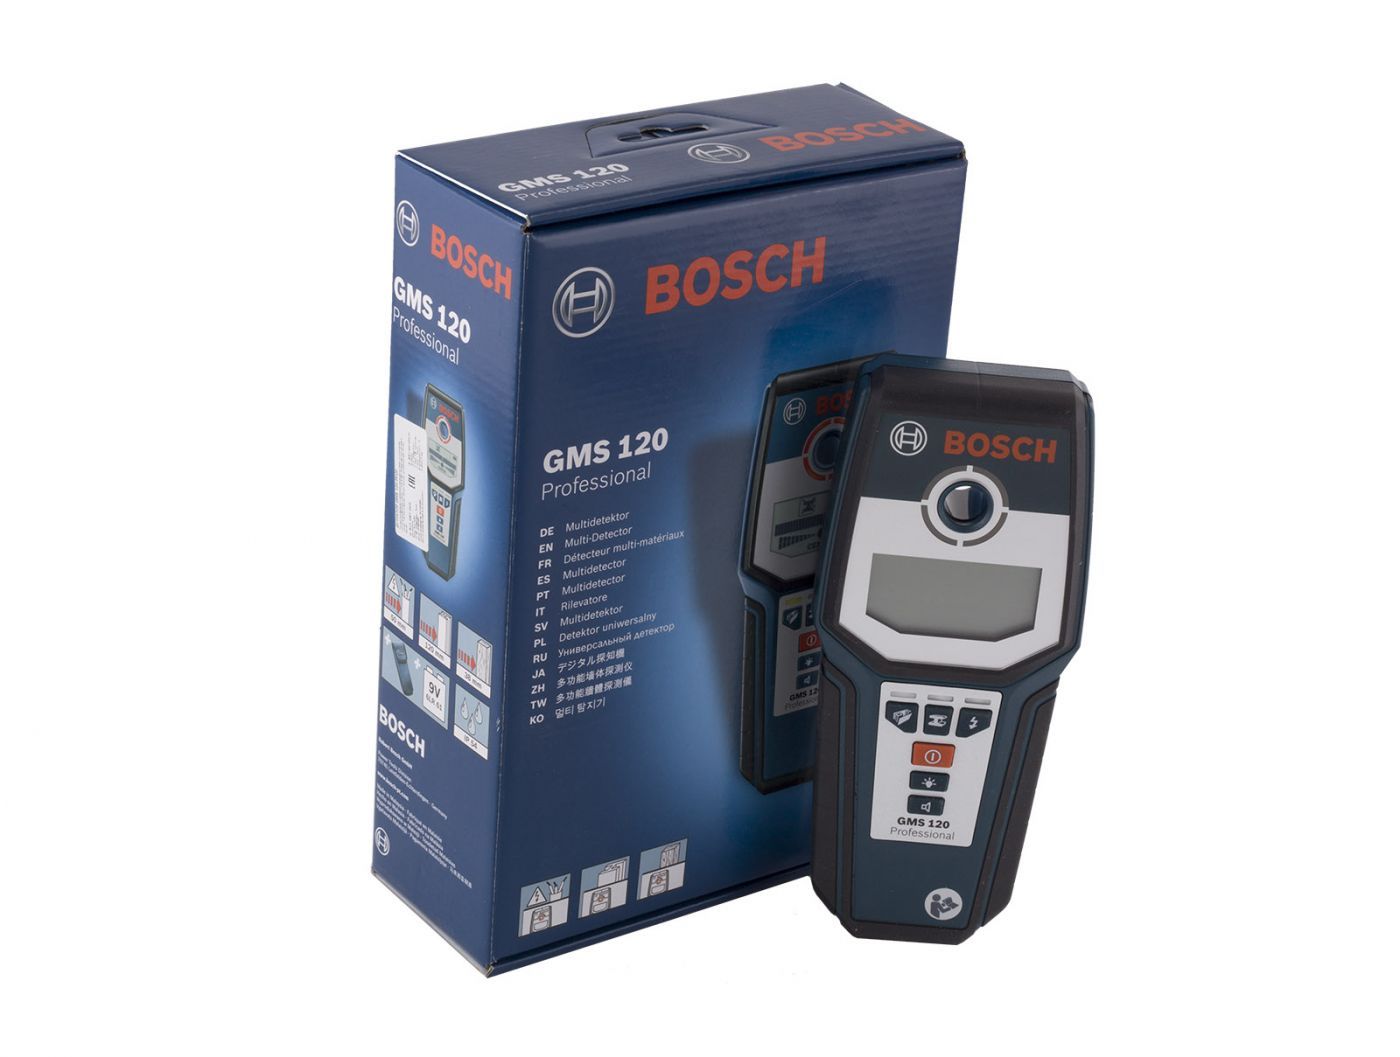 Детектор bosch gms. Детектор скрытой проводки Bosch GMS. Bosch GMS 120 professional. Детектор Bosch GMS 120 Prof 0.601.081.000. Bosch professional gms120prof.